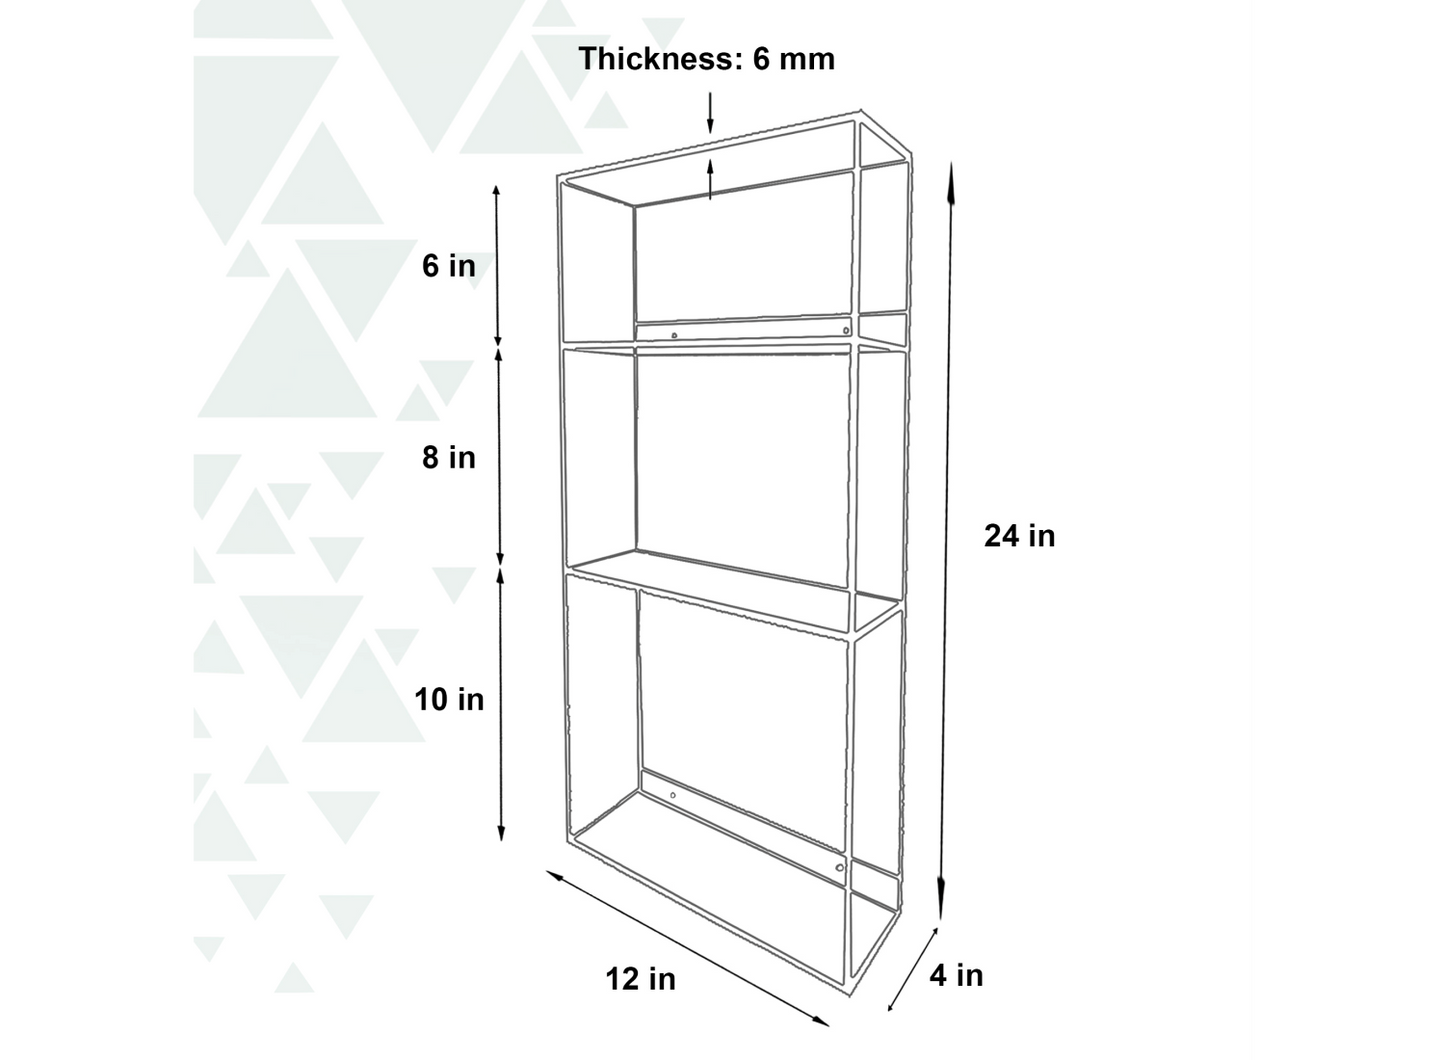 3111 Acrylic Shelf (24.0in (H) x 12.0in (L) x 4.0in (D) x 6.0mm)